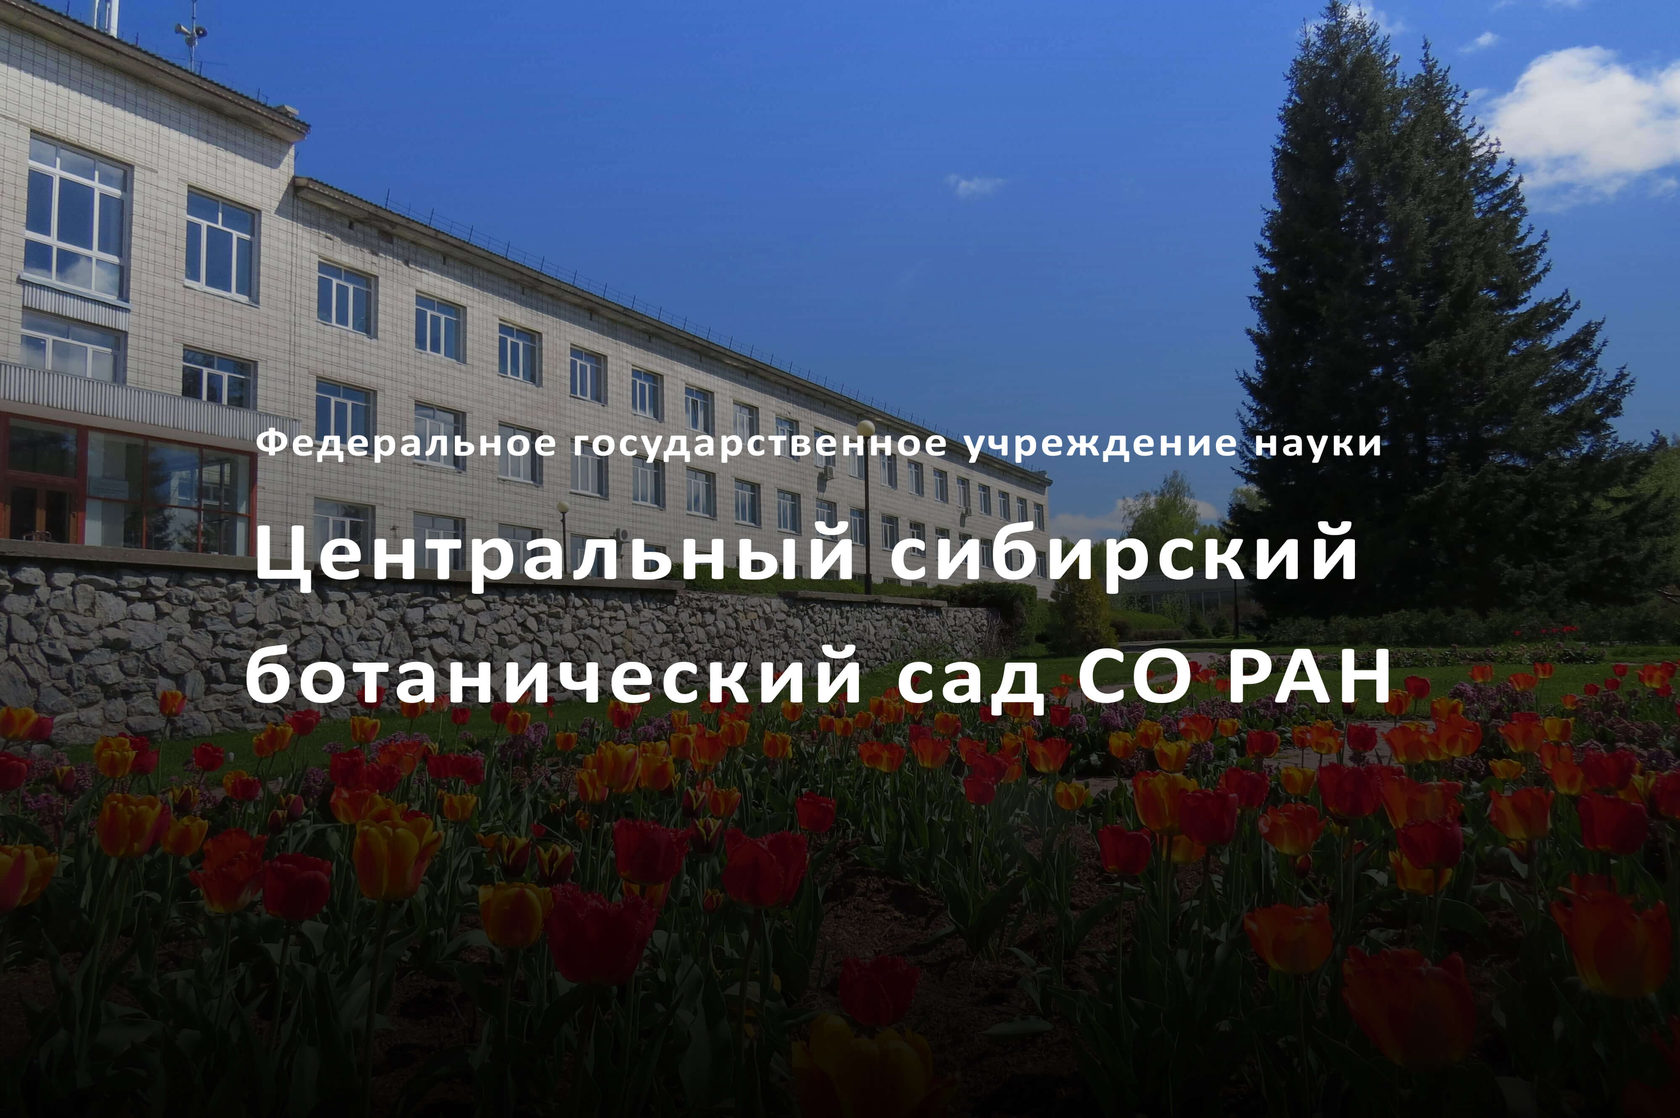 Центральный сибирский ботанический сад